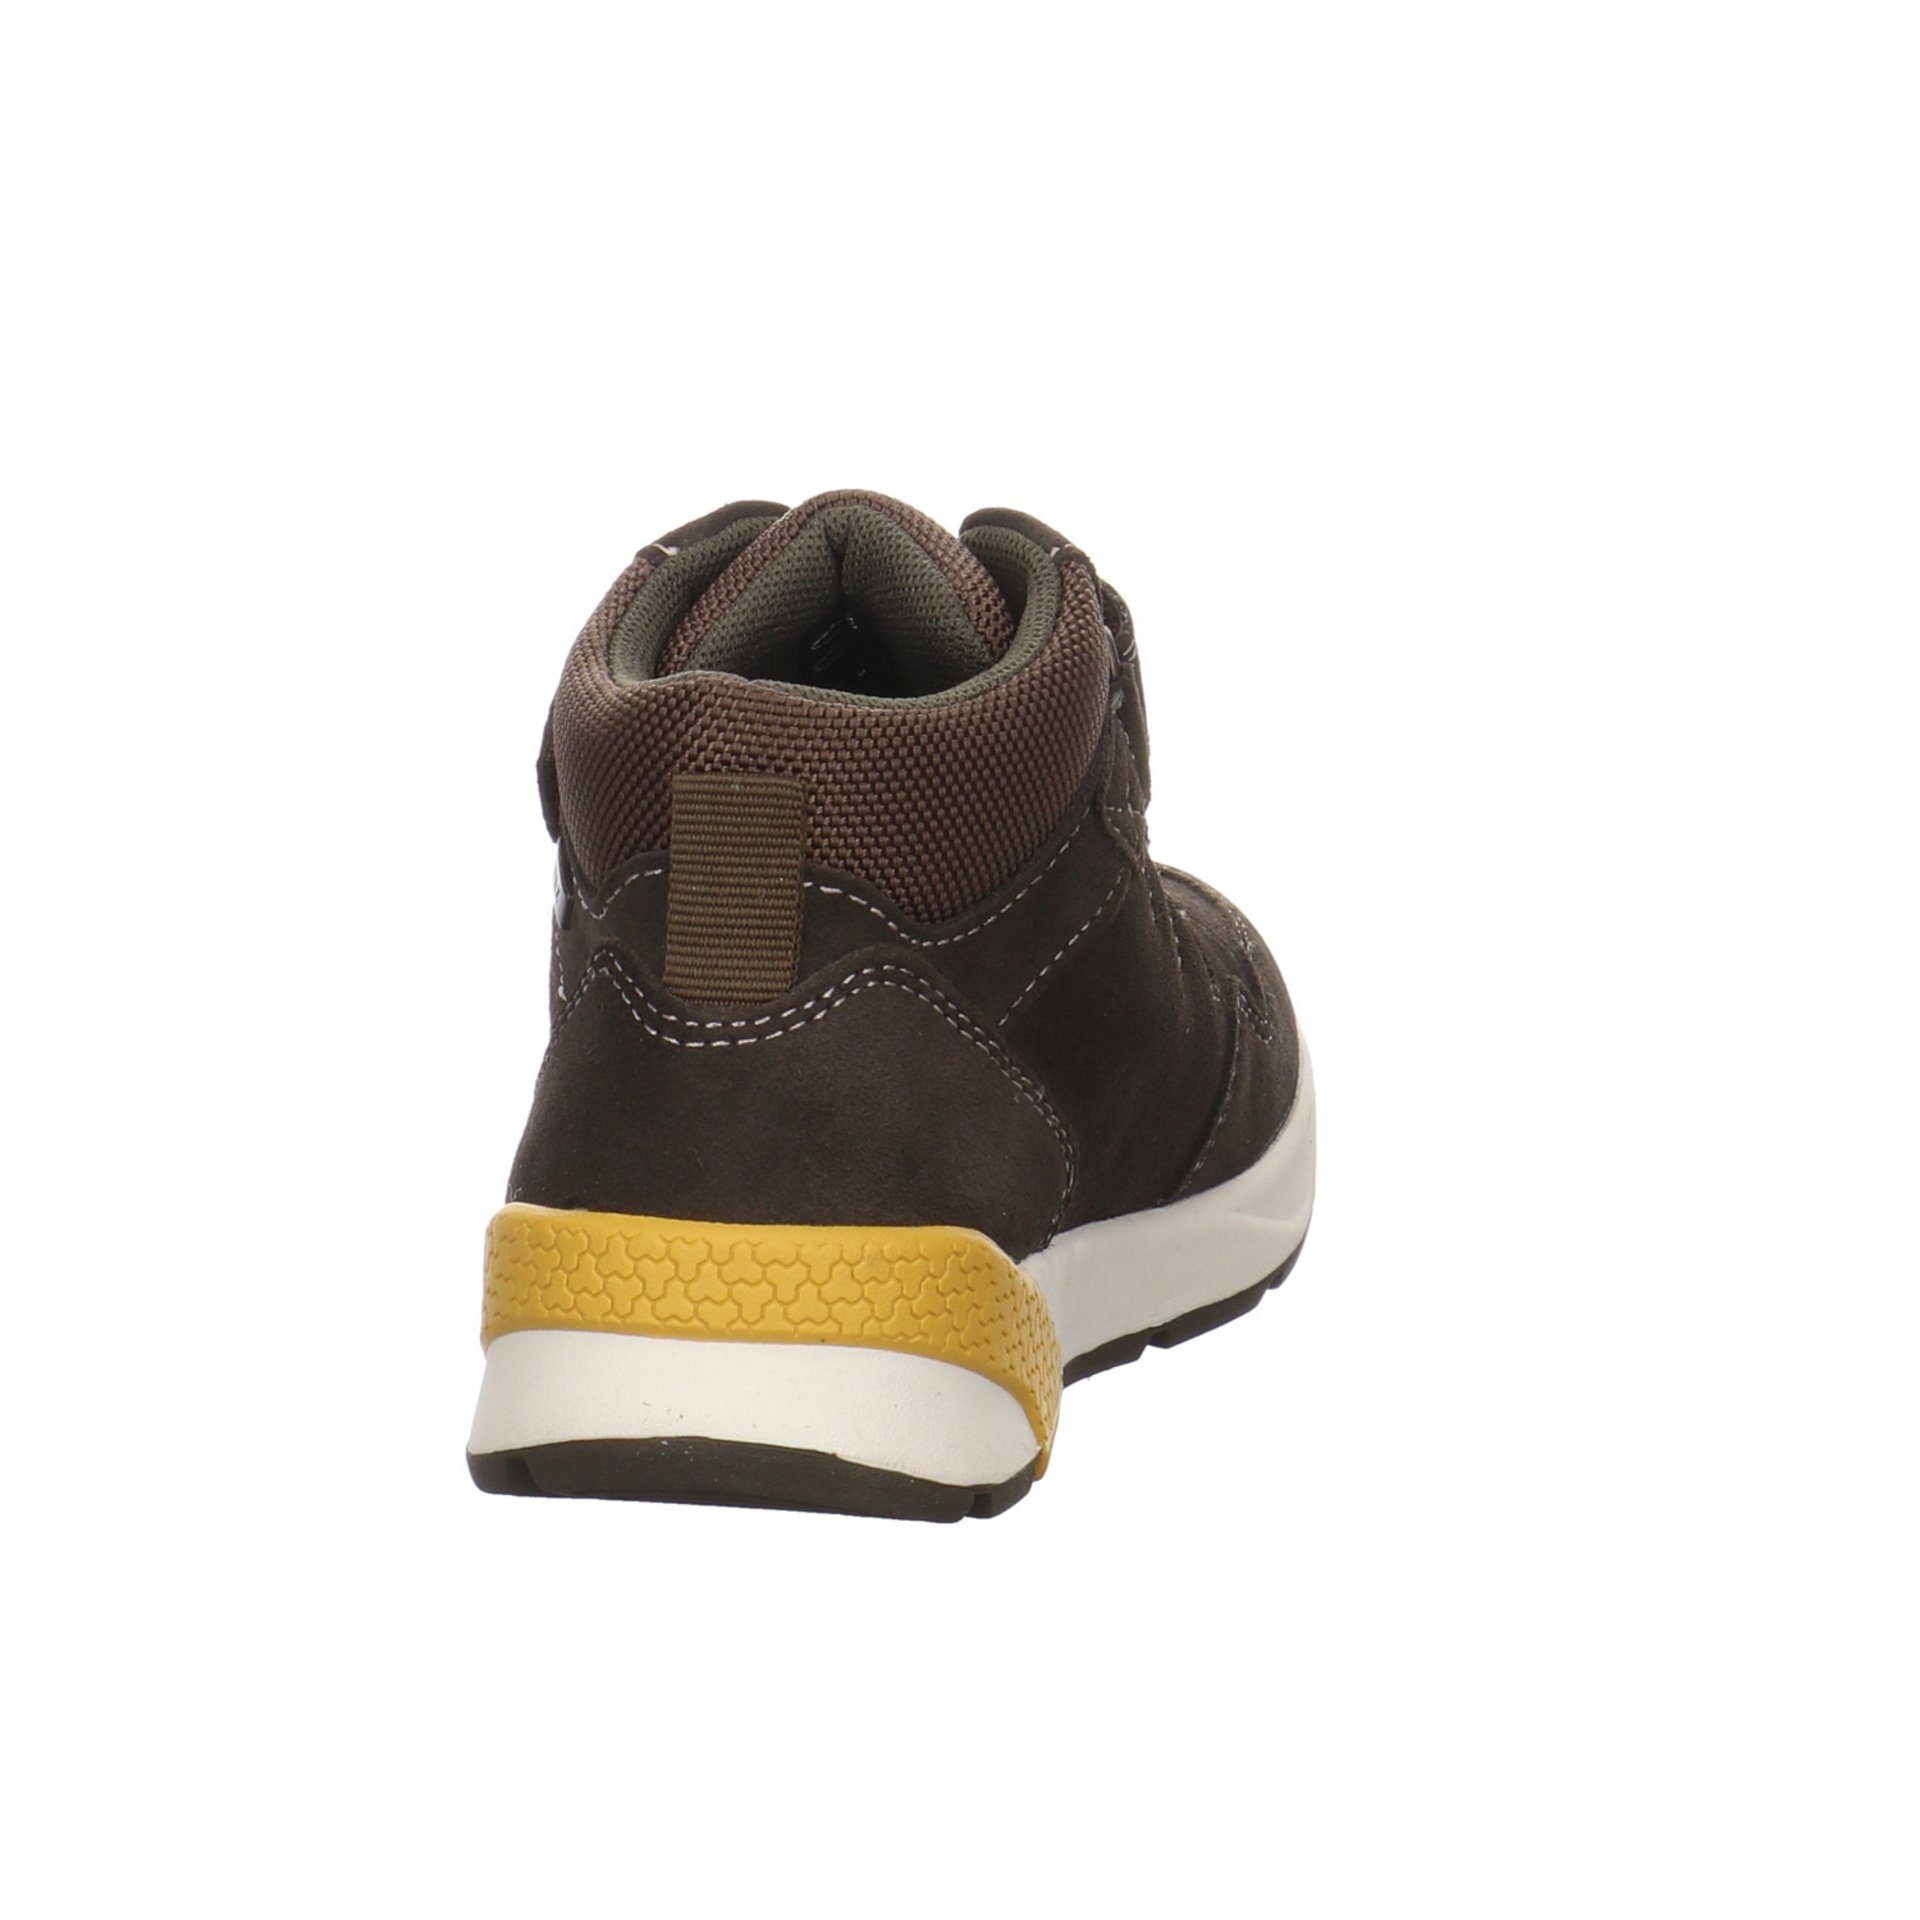 Lurchi Jungen Schnürhalbschuhe grün Ronald-Tex Leder-/Textilkombination Sneaker Boots 049296